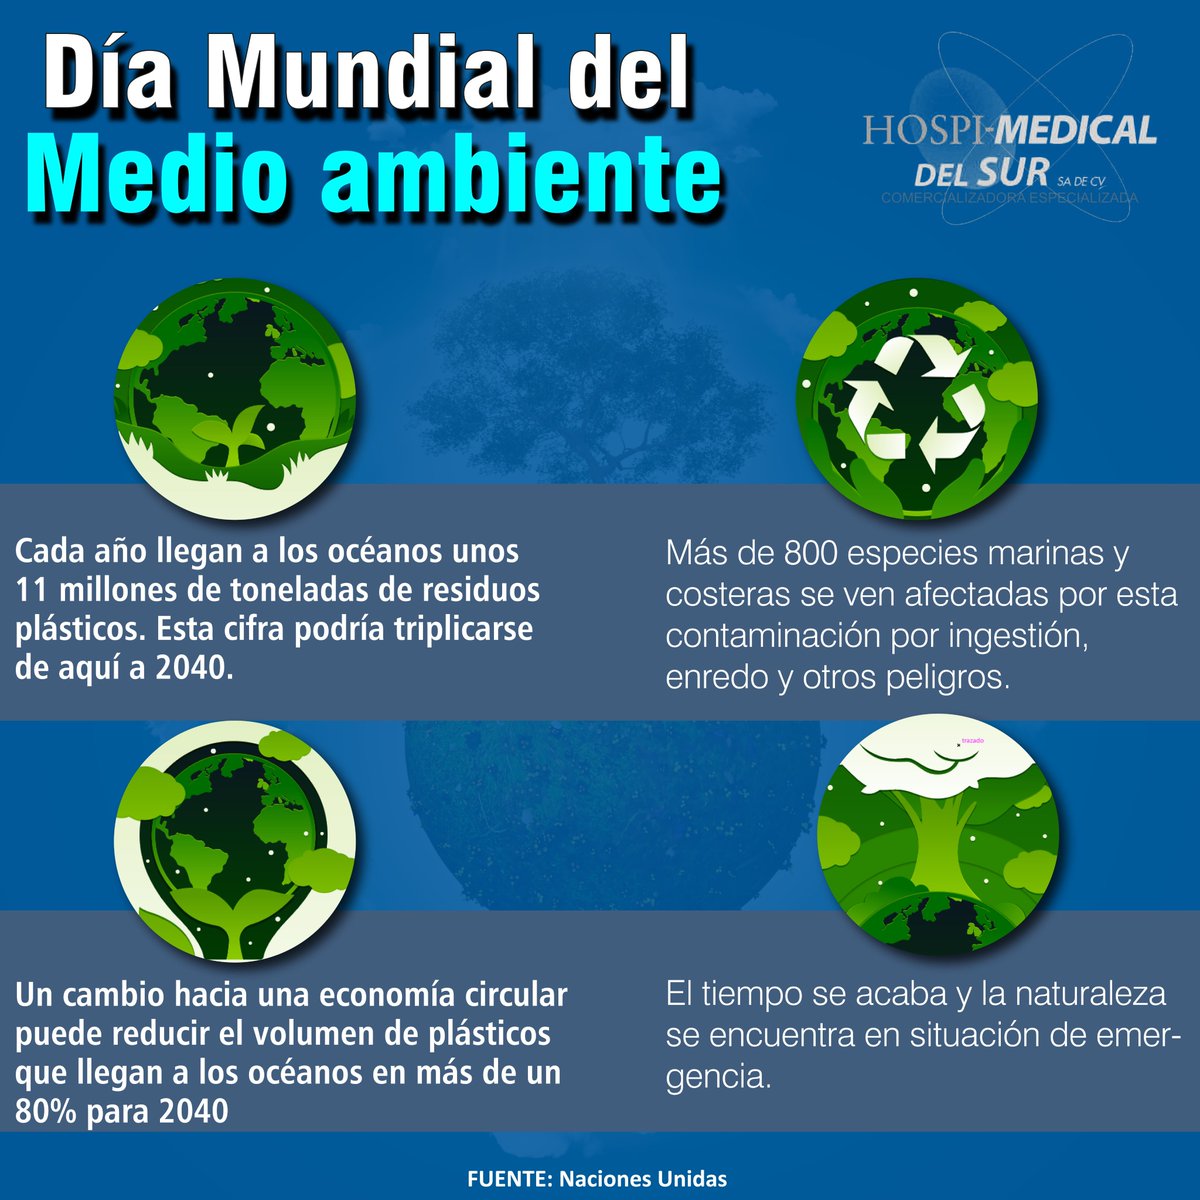 05 de junio Día Mundial del Medio Ambiente
'Si amas tu vida, empieza por amar la del planeta'📷📷📷
#MedioAmbiente #cuidaelplaneta #vida #mexico #reciclaje